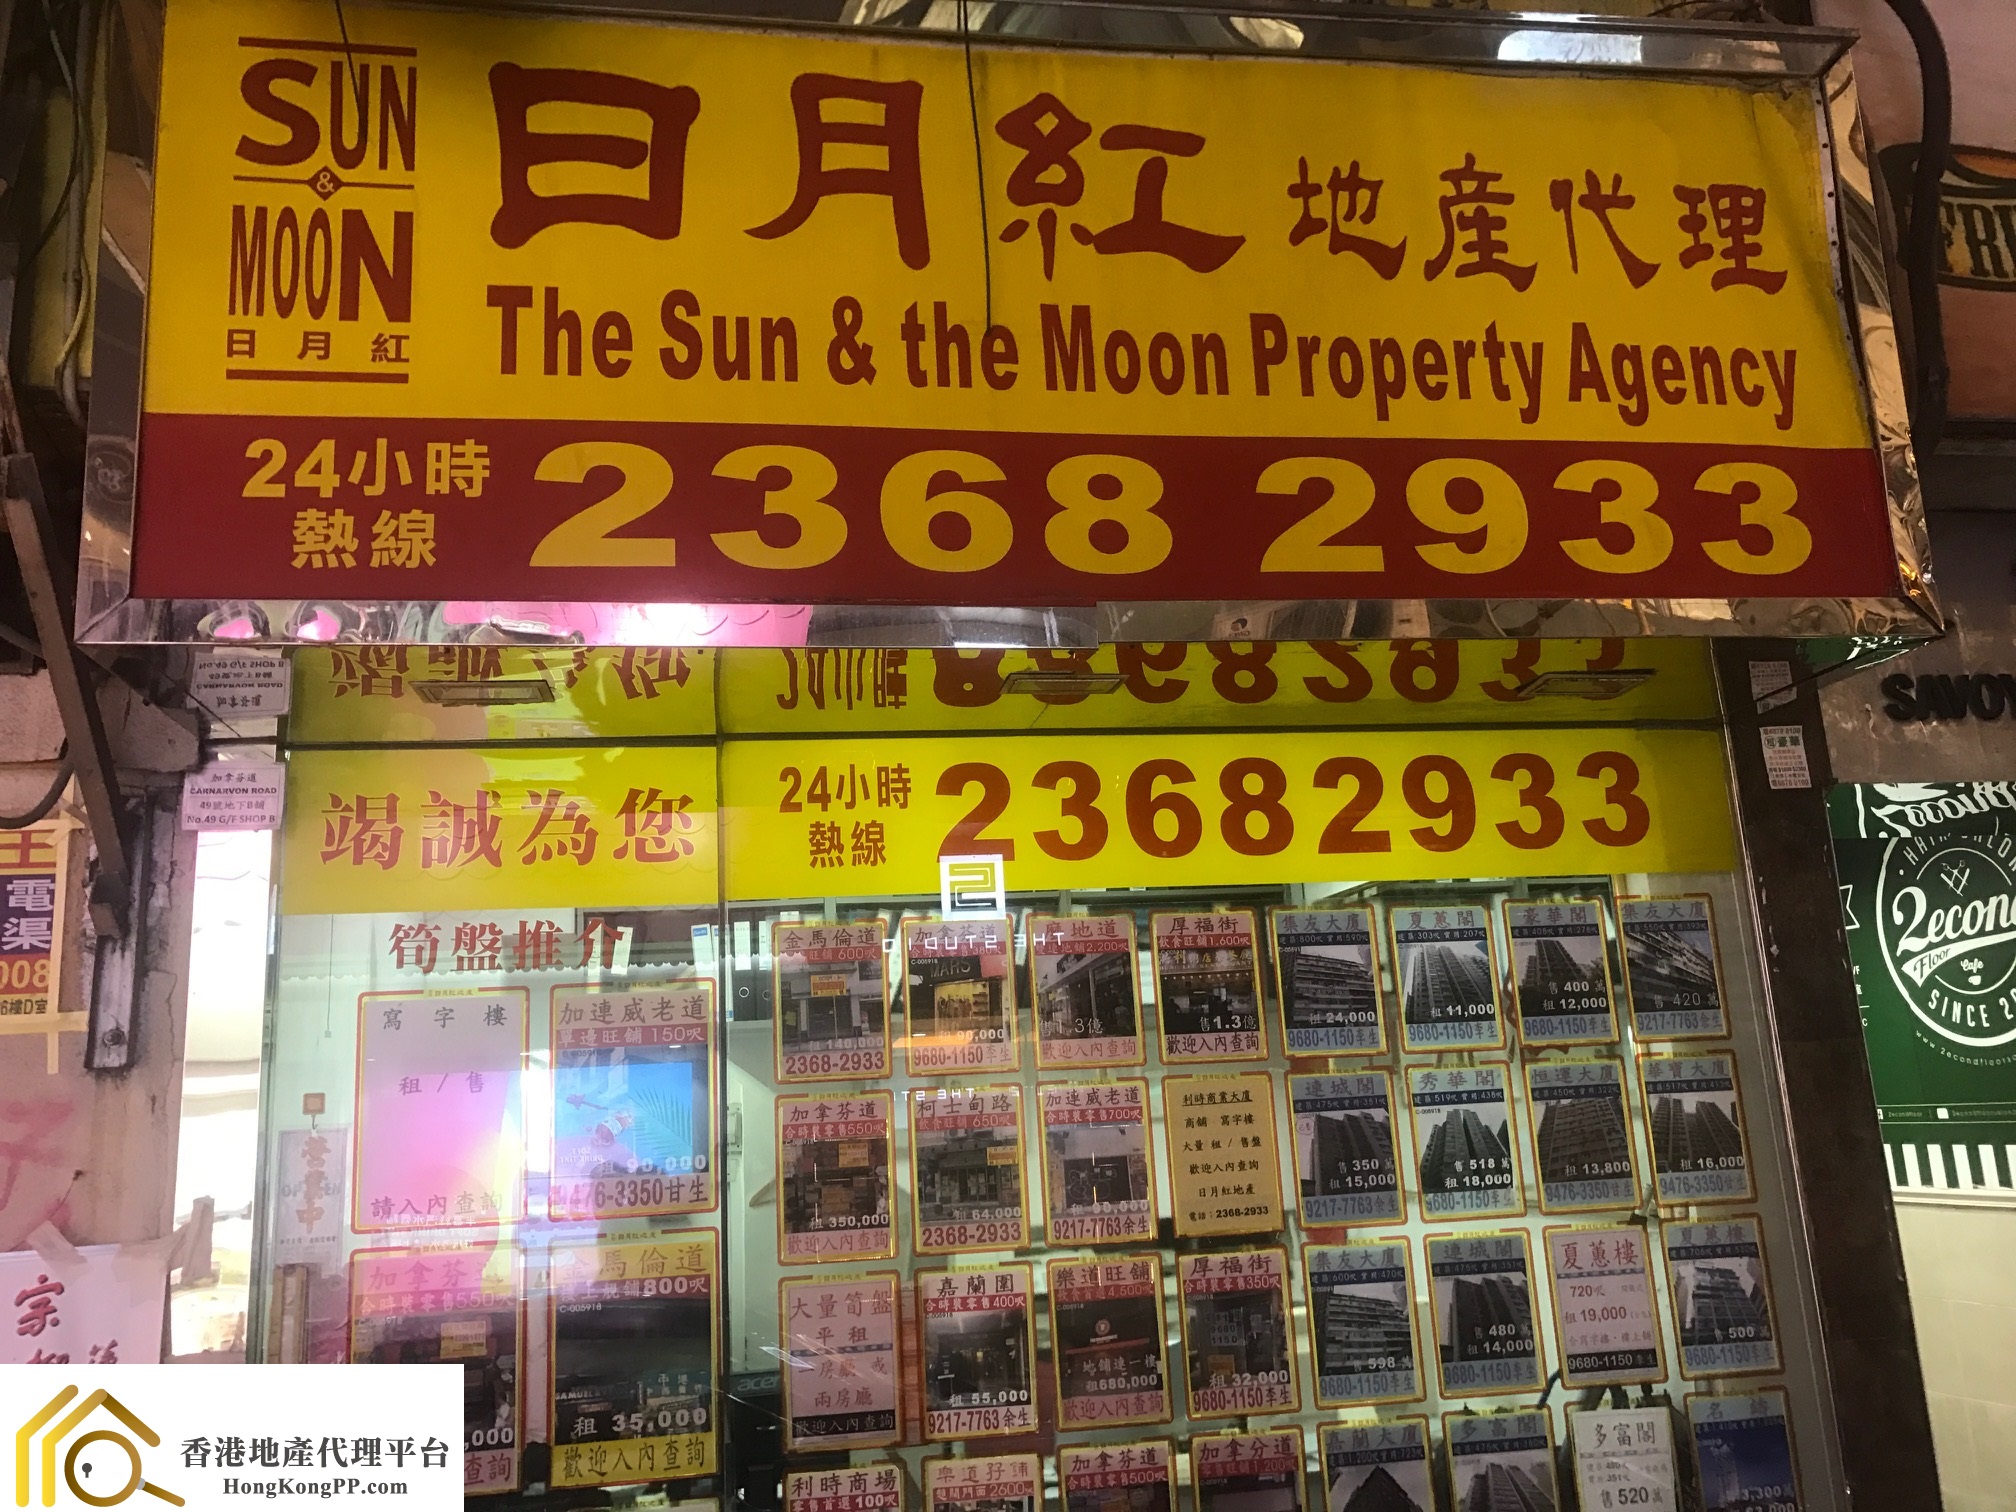 商舖地產代理: 日月紅地產代理 The Sun & the Moon Property Agency